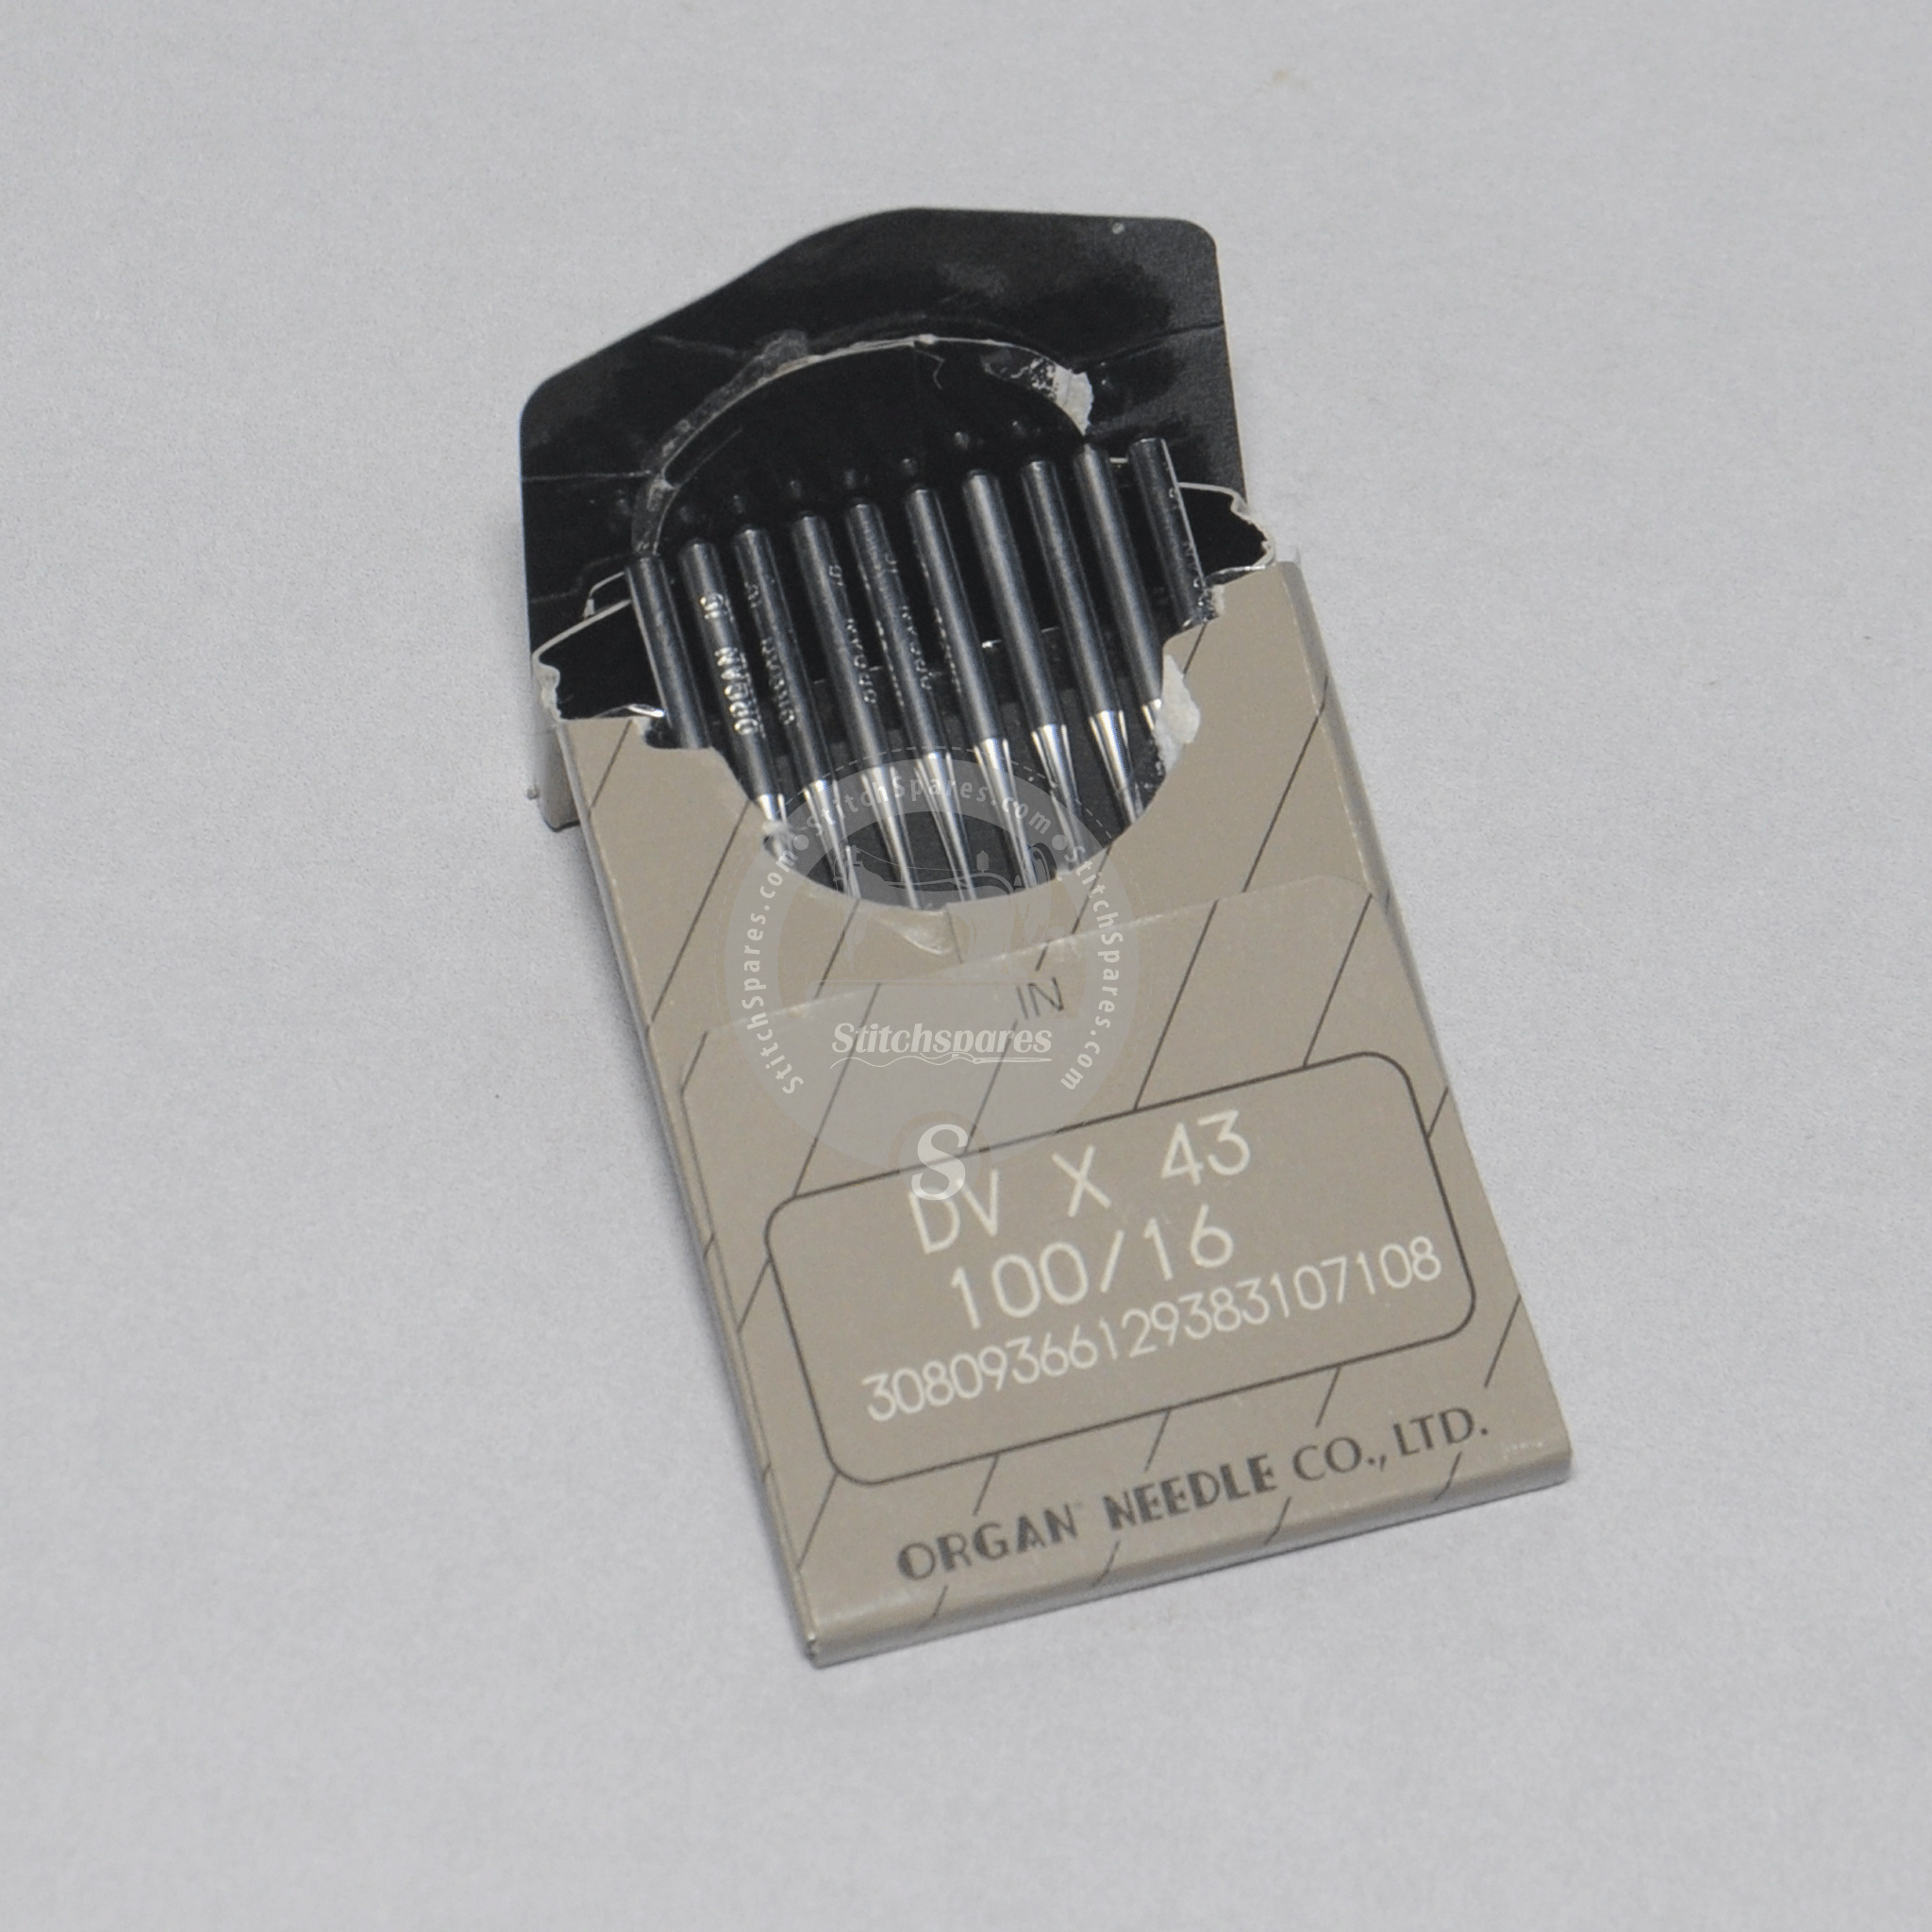 Orgelnadel DVX43 62x43 SY3516 (Flat Lock / Flat Seamer Machine)